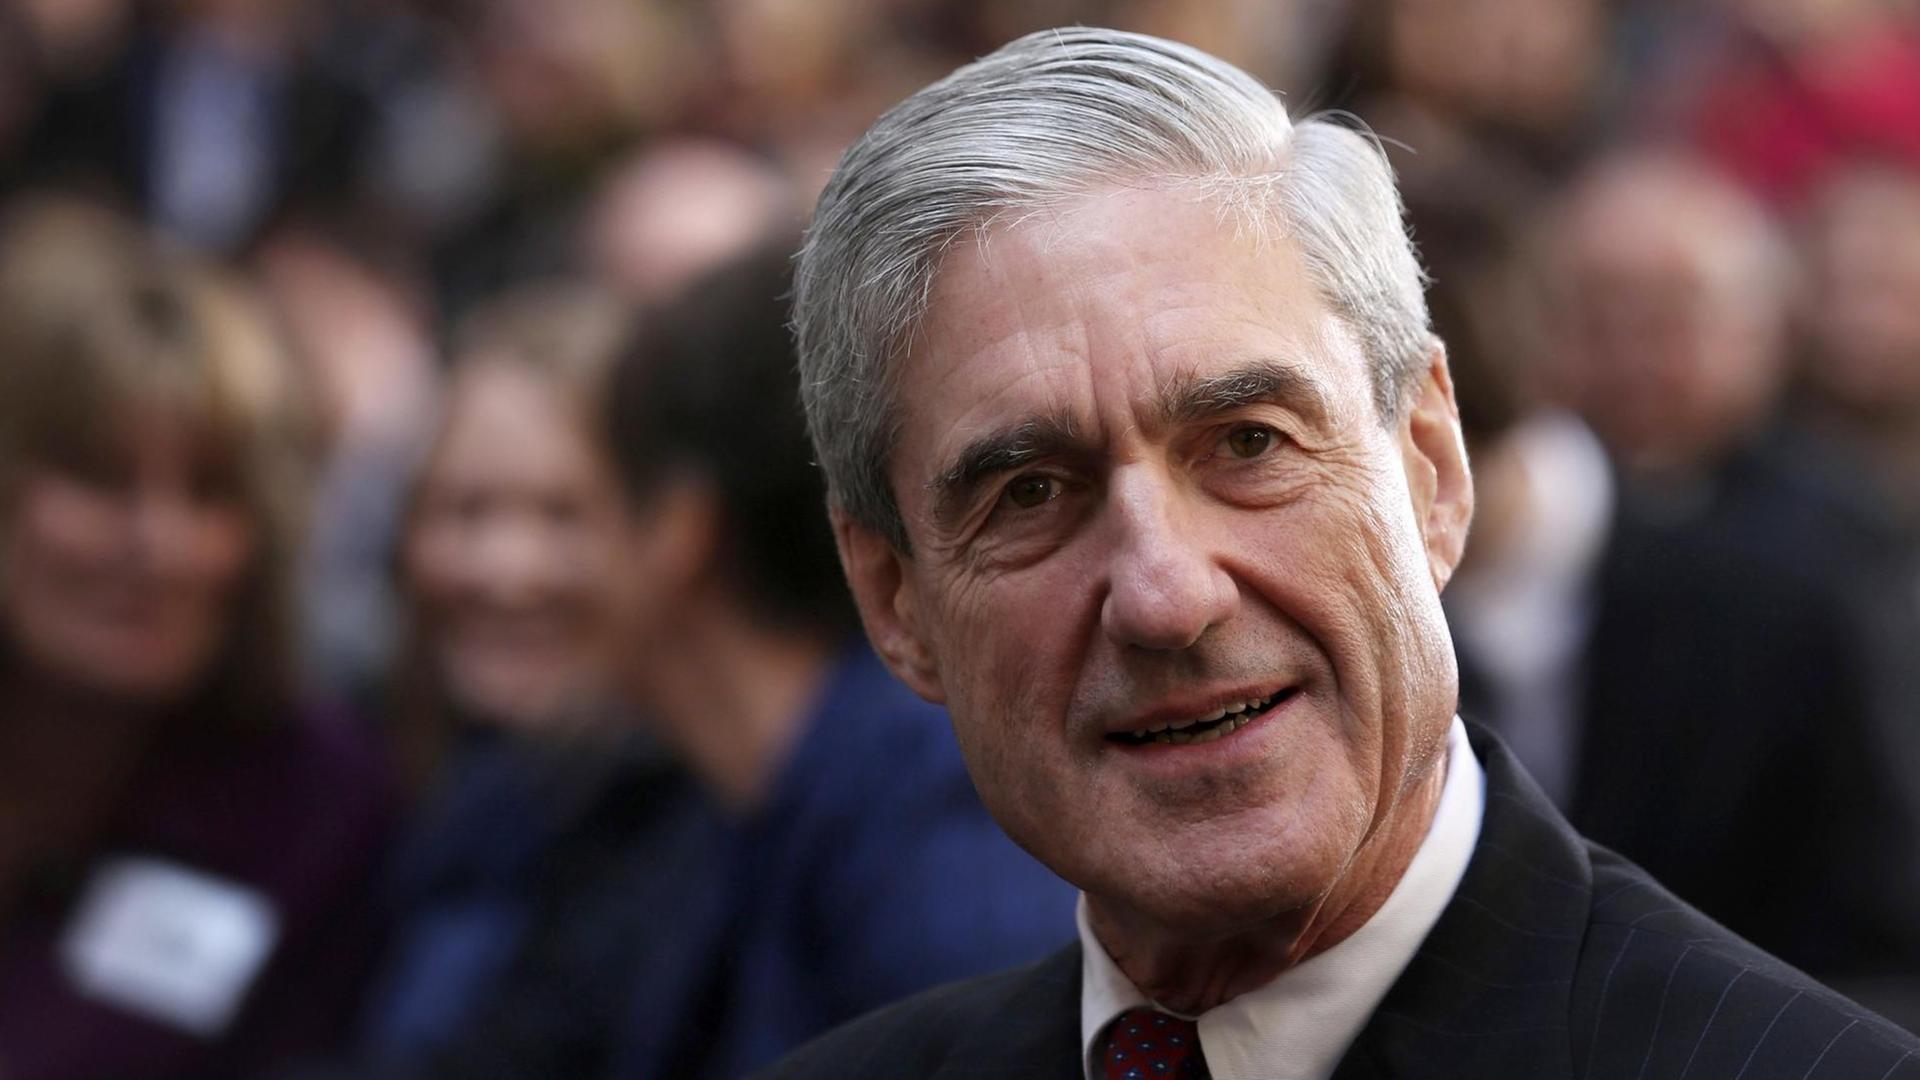 Der ehemalige FBI-Direktor Robert Mueller bei der Vereidigung von James Comey zum neuen Direktor im Oktober 2013 in Washington.